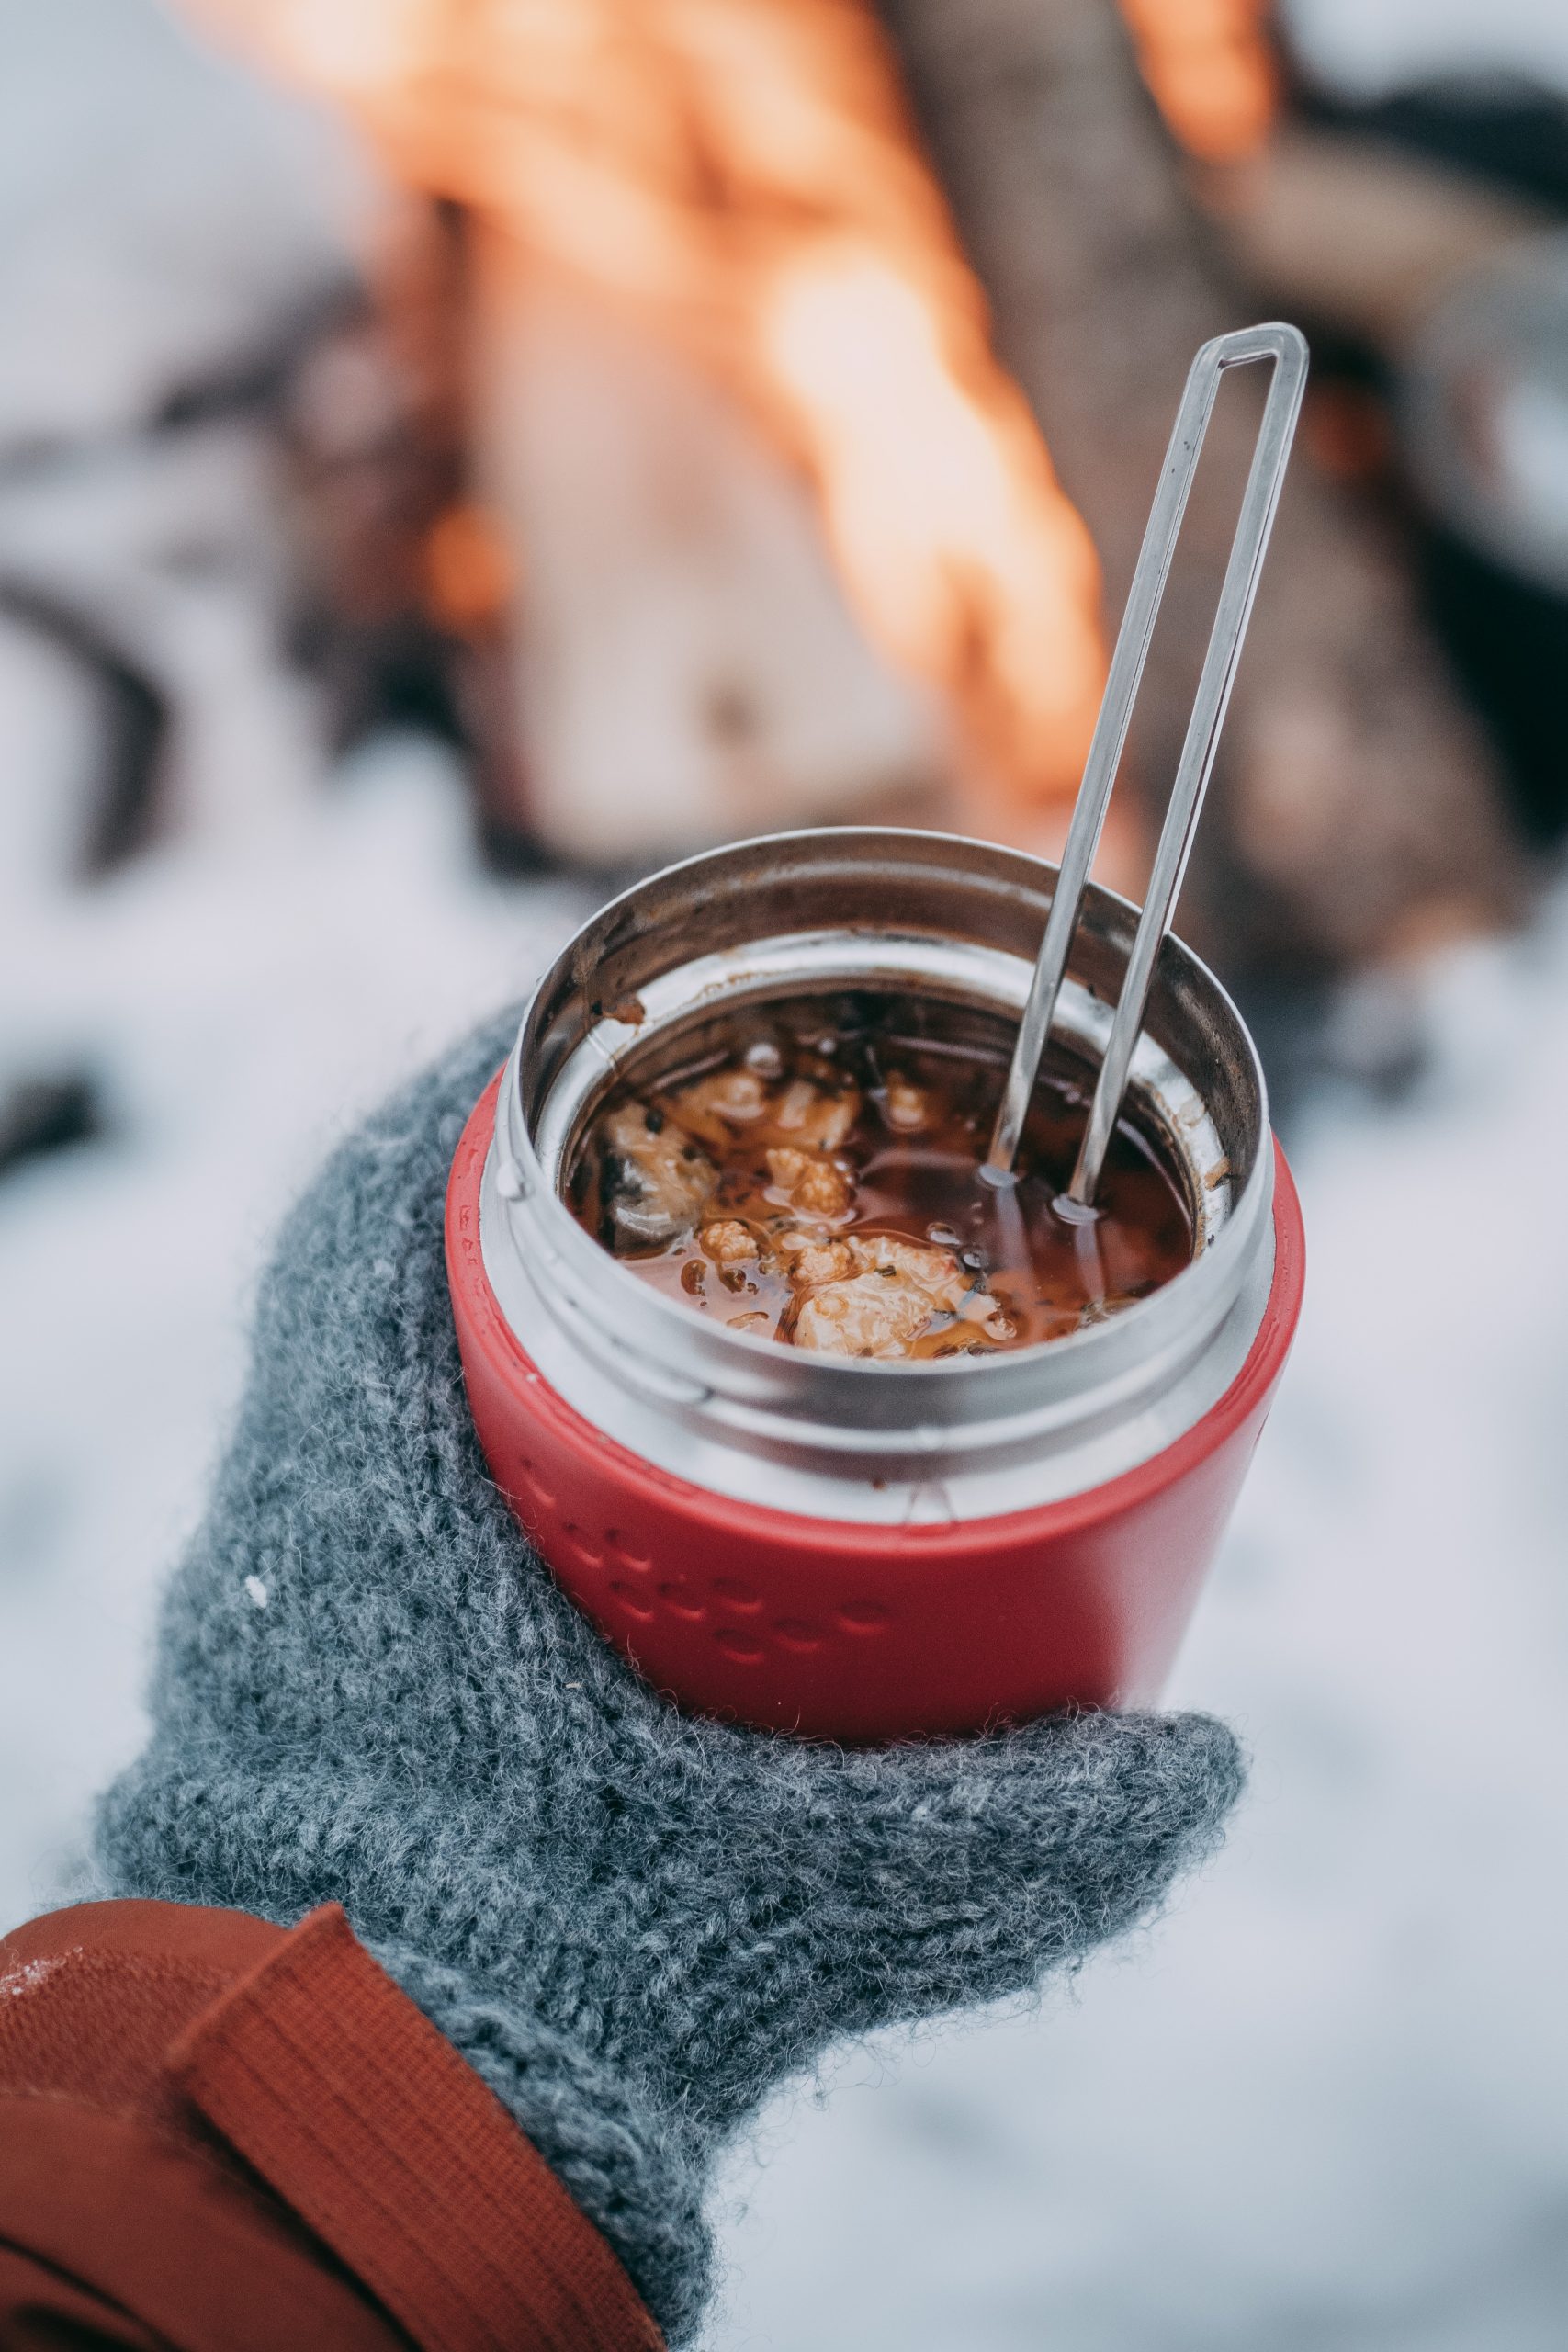 stew by a fire in winter